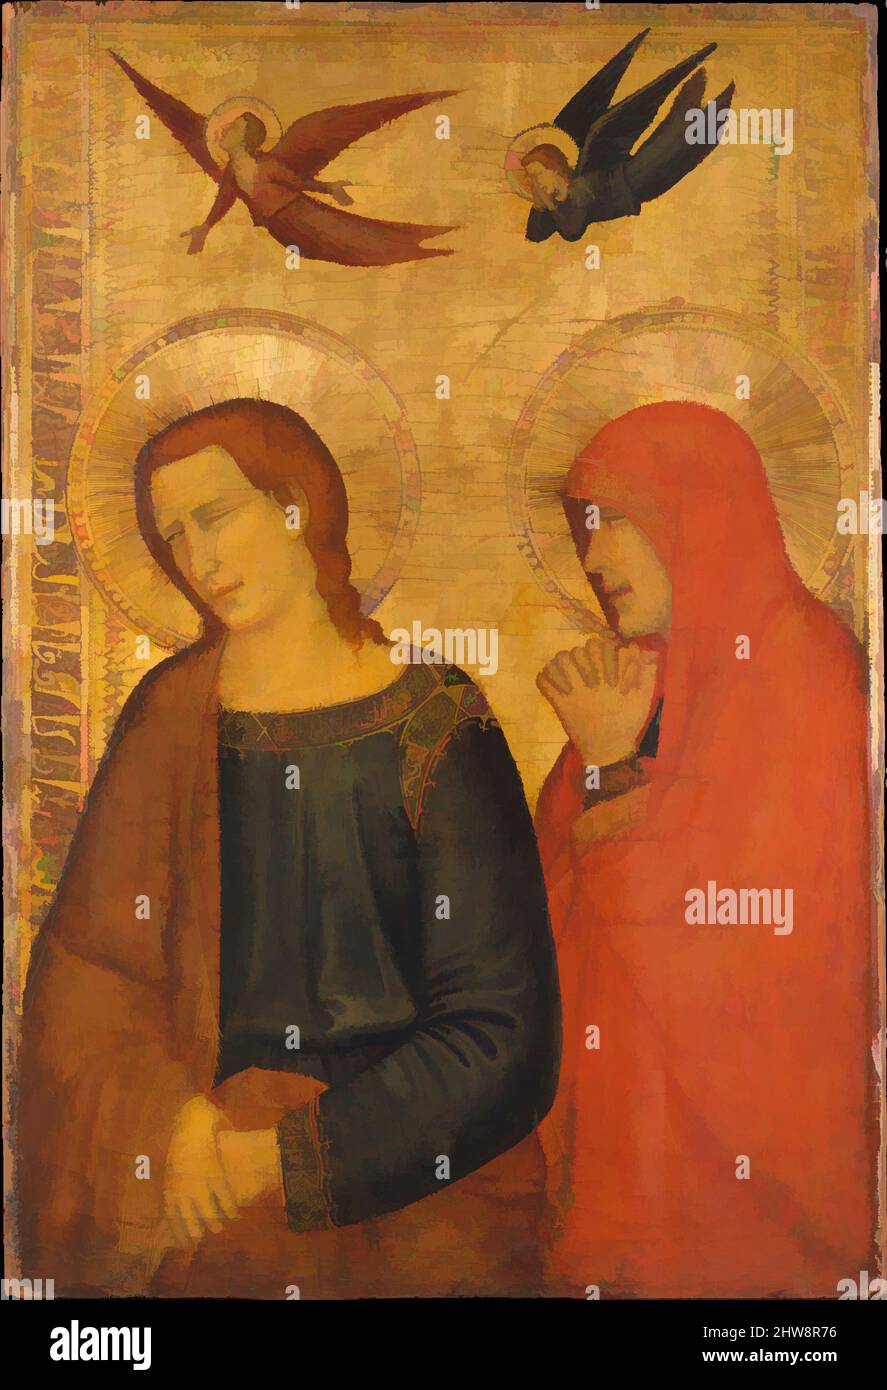 Art inspiré par Saints John l'évangéliste et Mary Magdalene, ca. 1335–45, Tempéa sur bois, doré, 23 x 15 5/8 po. (58,4 x 39,7 cm), peintures, italien, Follower napolitain de Giotto (deuxième tiers actif du 14th siècle), cette peinture, avec un panneau représentant les œuvres classiques modernisées par Artotop avec une touche de modernité. Formes, couleur et valeur, impact visuel accrocheur sur l'art émotions par la liberté d'œuvres d'art d'une manière contemporaine. Un message intemporel qui cherche une nouvelle direction créative. Artistes qui se tournent vers le support numérique et créent le NFT Artotop Banque D'Images